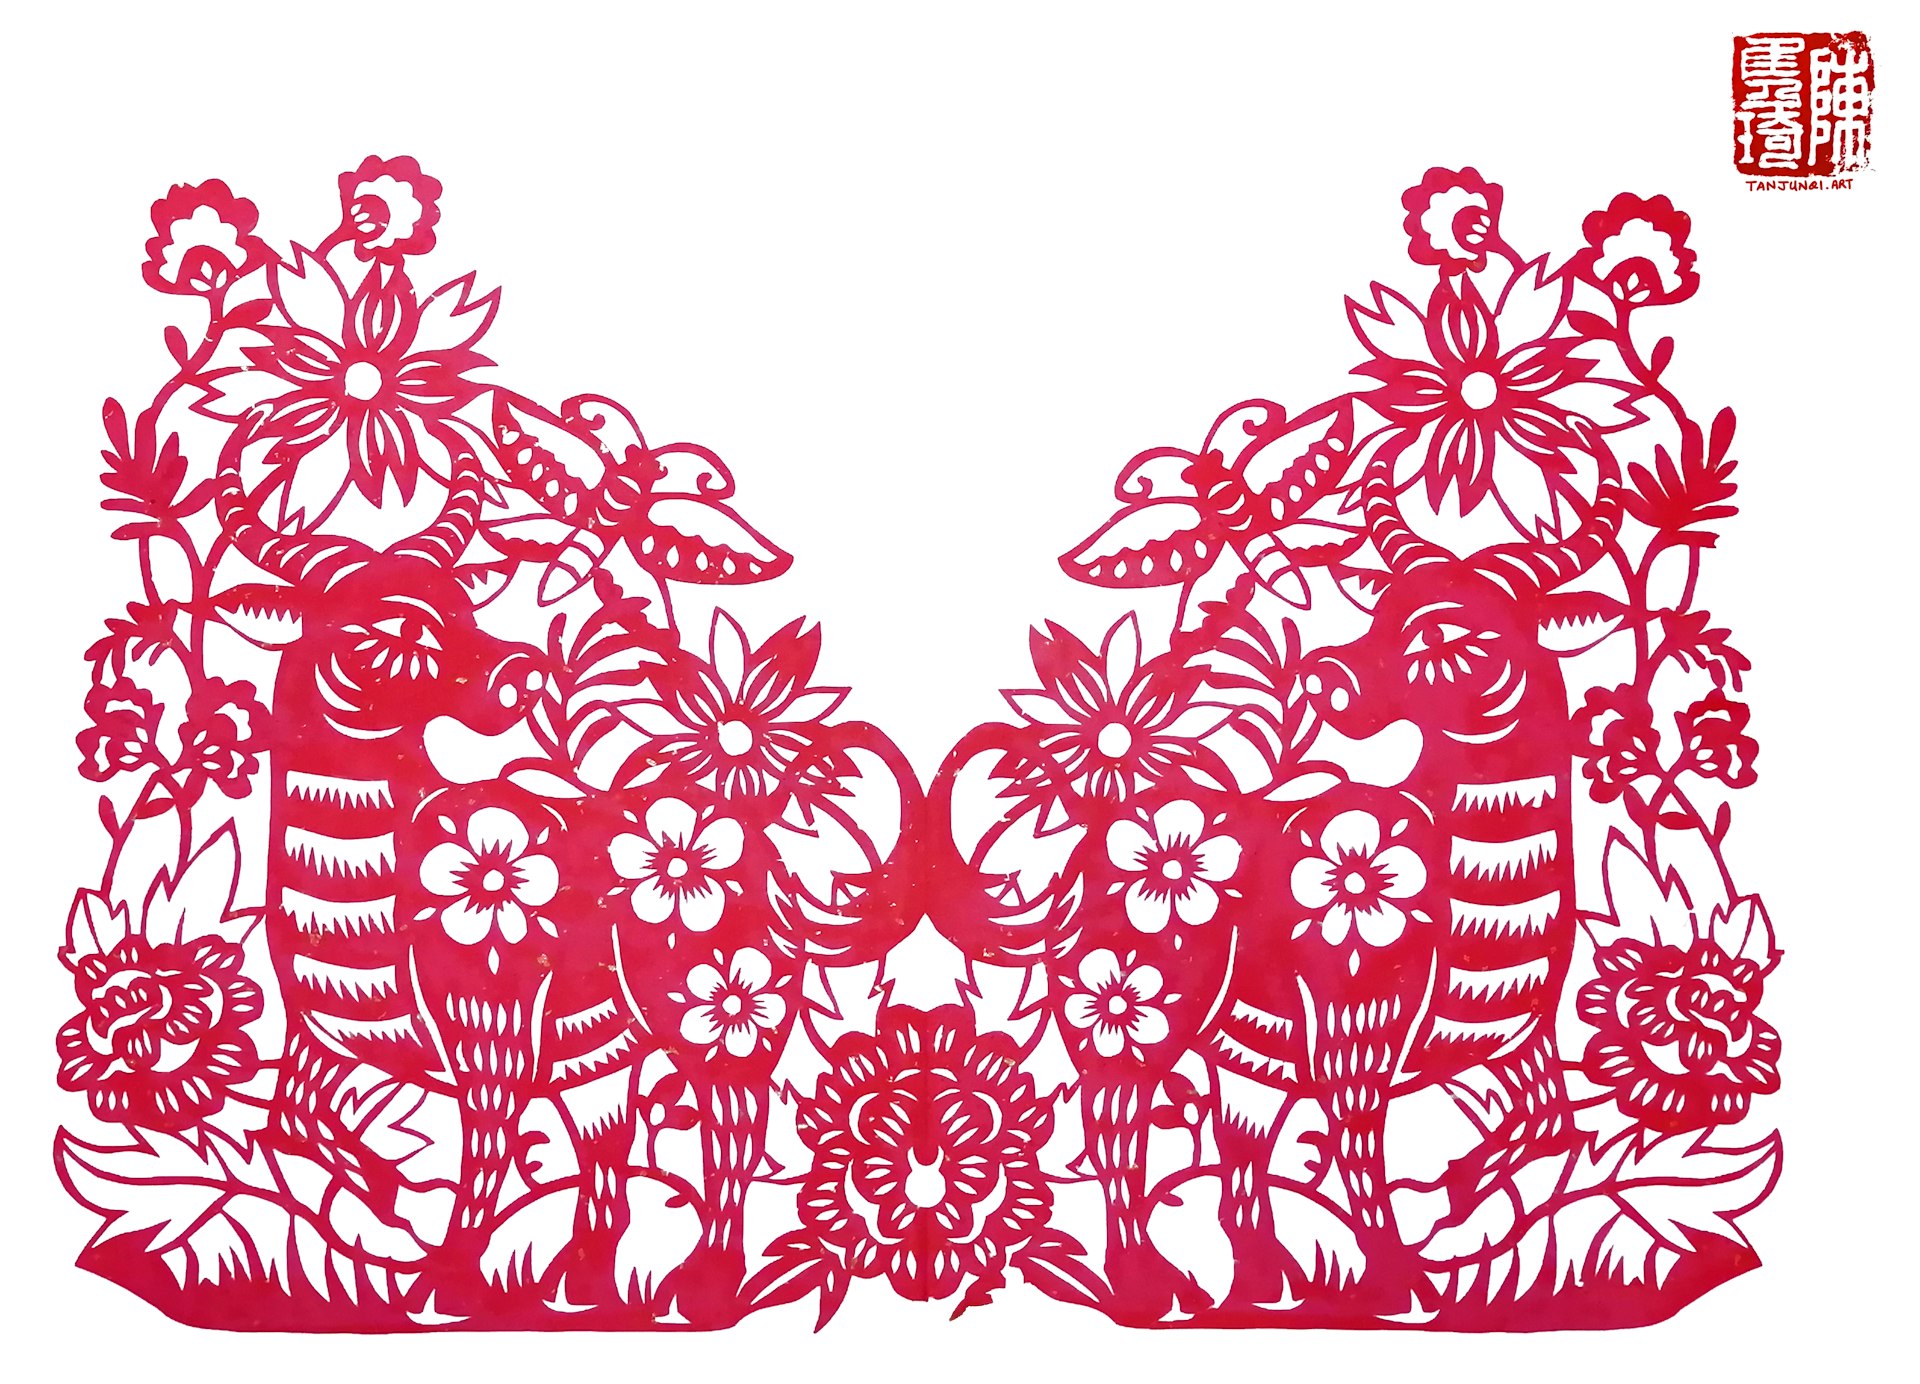 对称的剪纸，描绘的是两头站在盛开的花丛中的牛，望着空中飞舞的蝴蝶